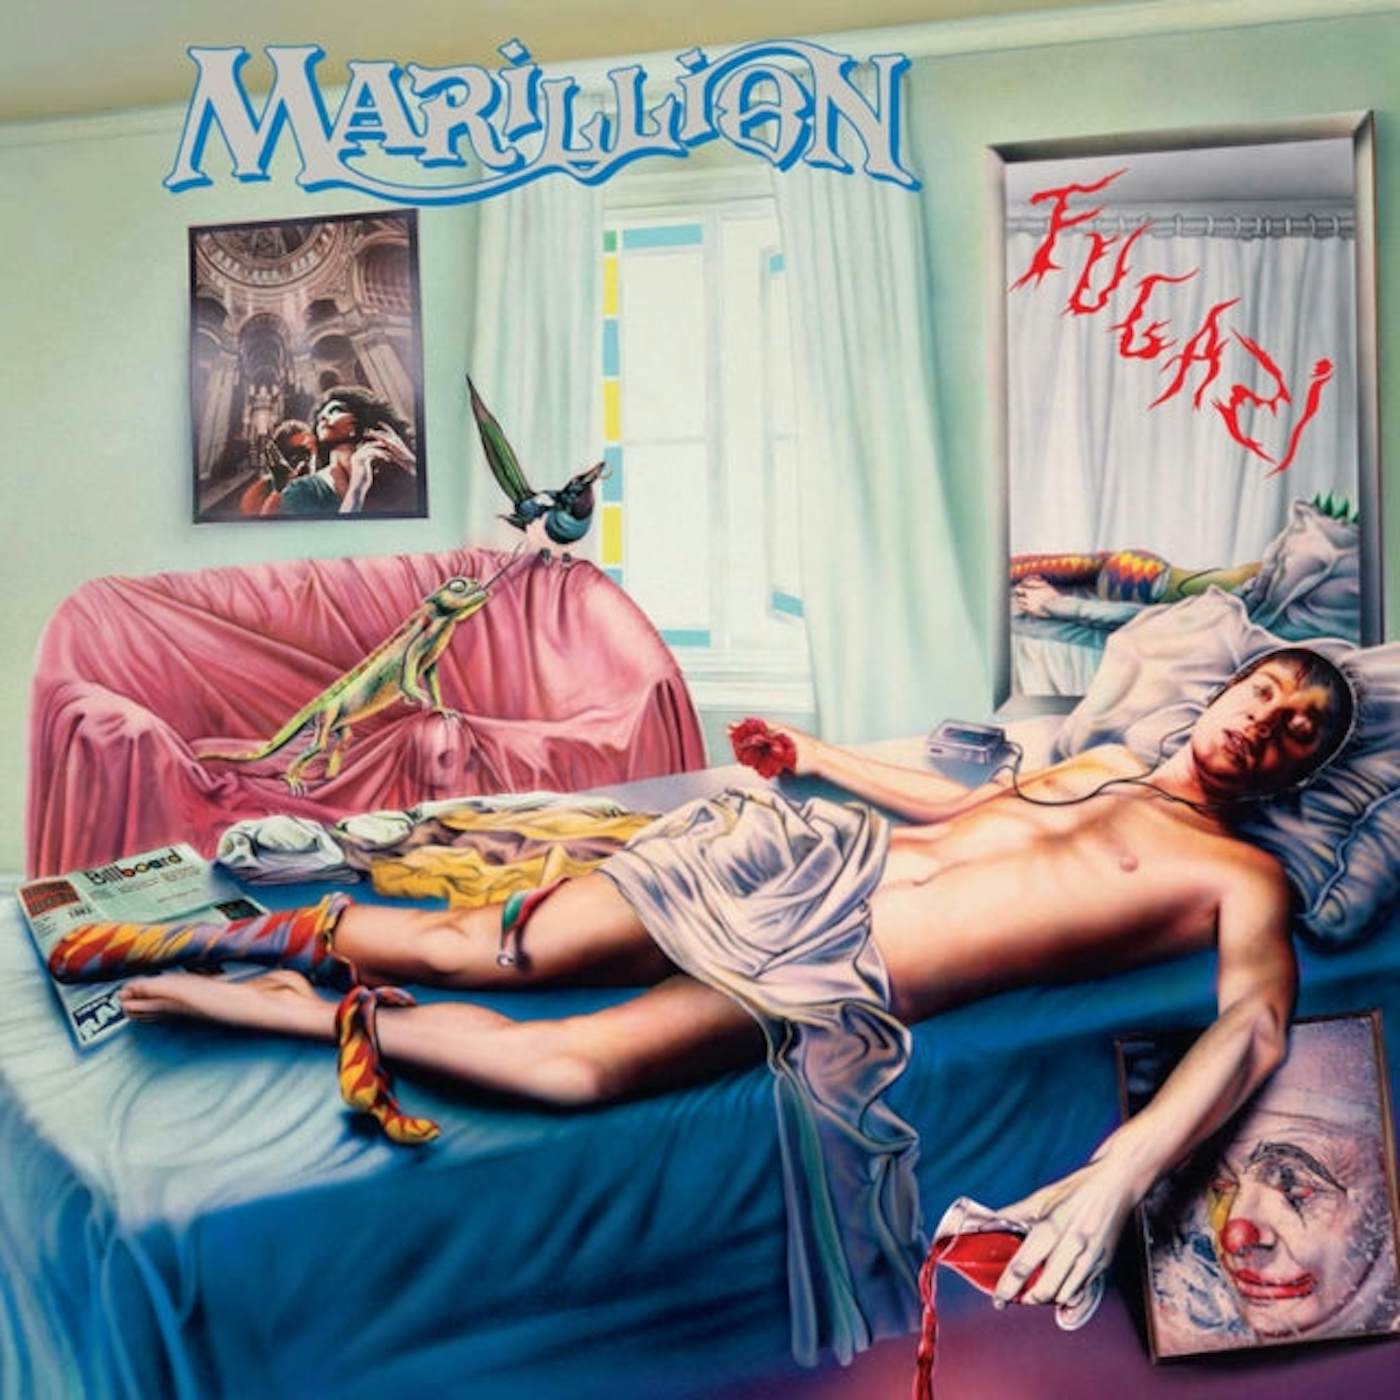 Marillion LP Vinyl Record - Fugazi (Deluxe Edition)